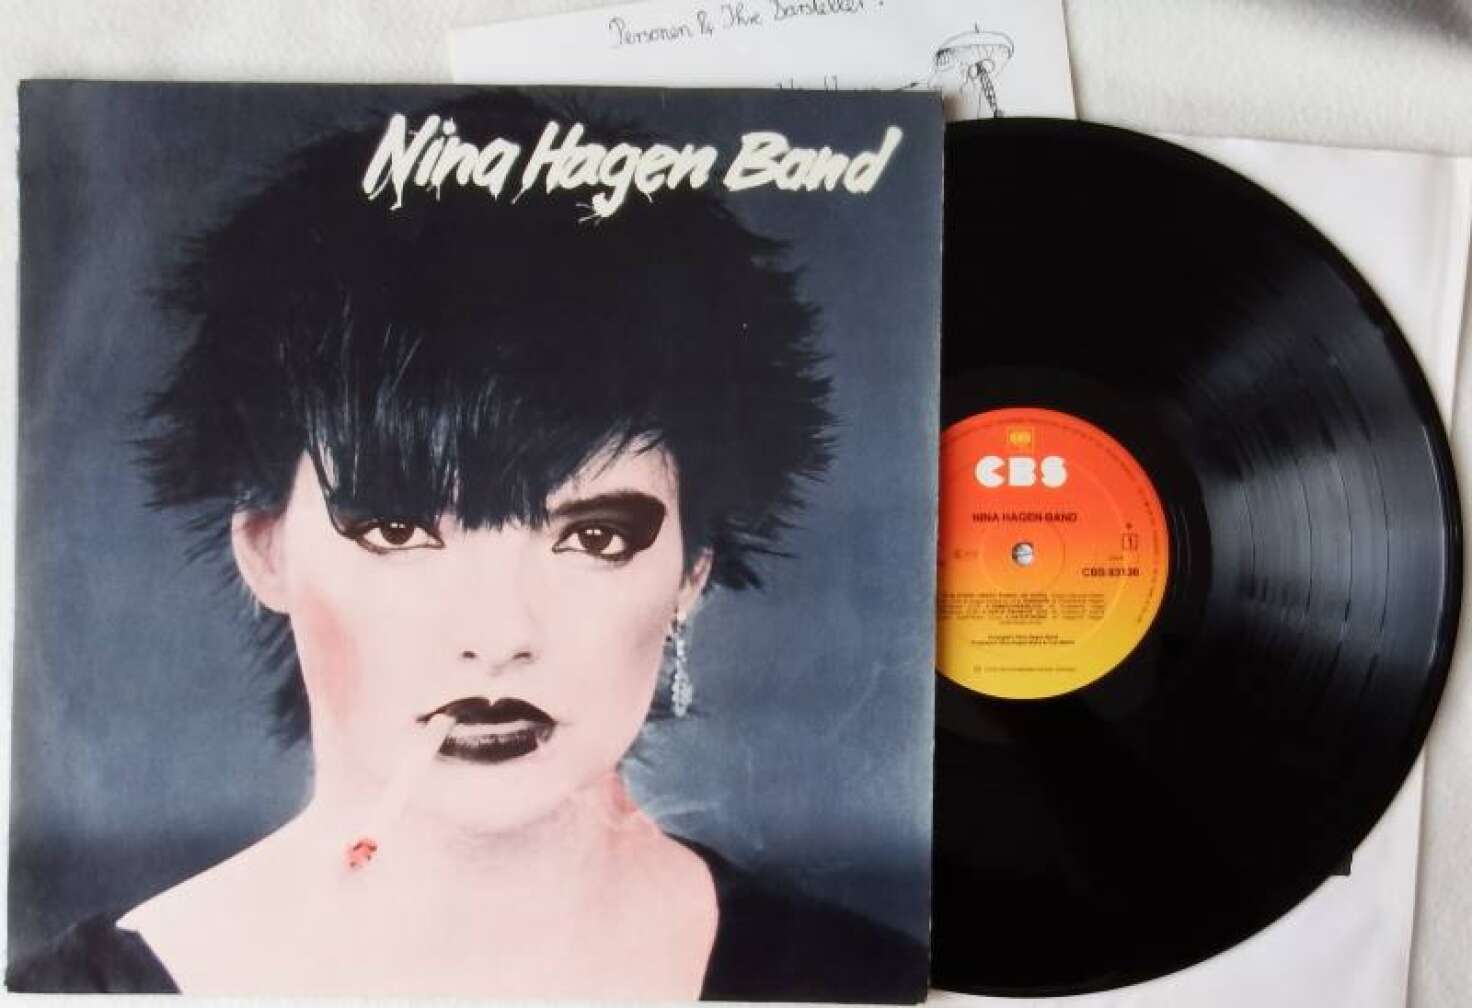 Die Vinyl zu Nina Hagen Band